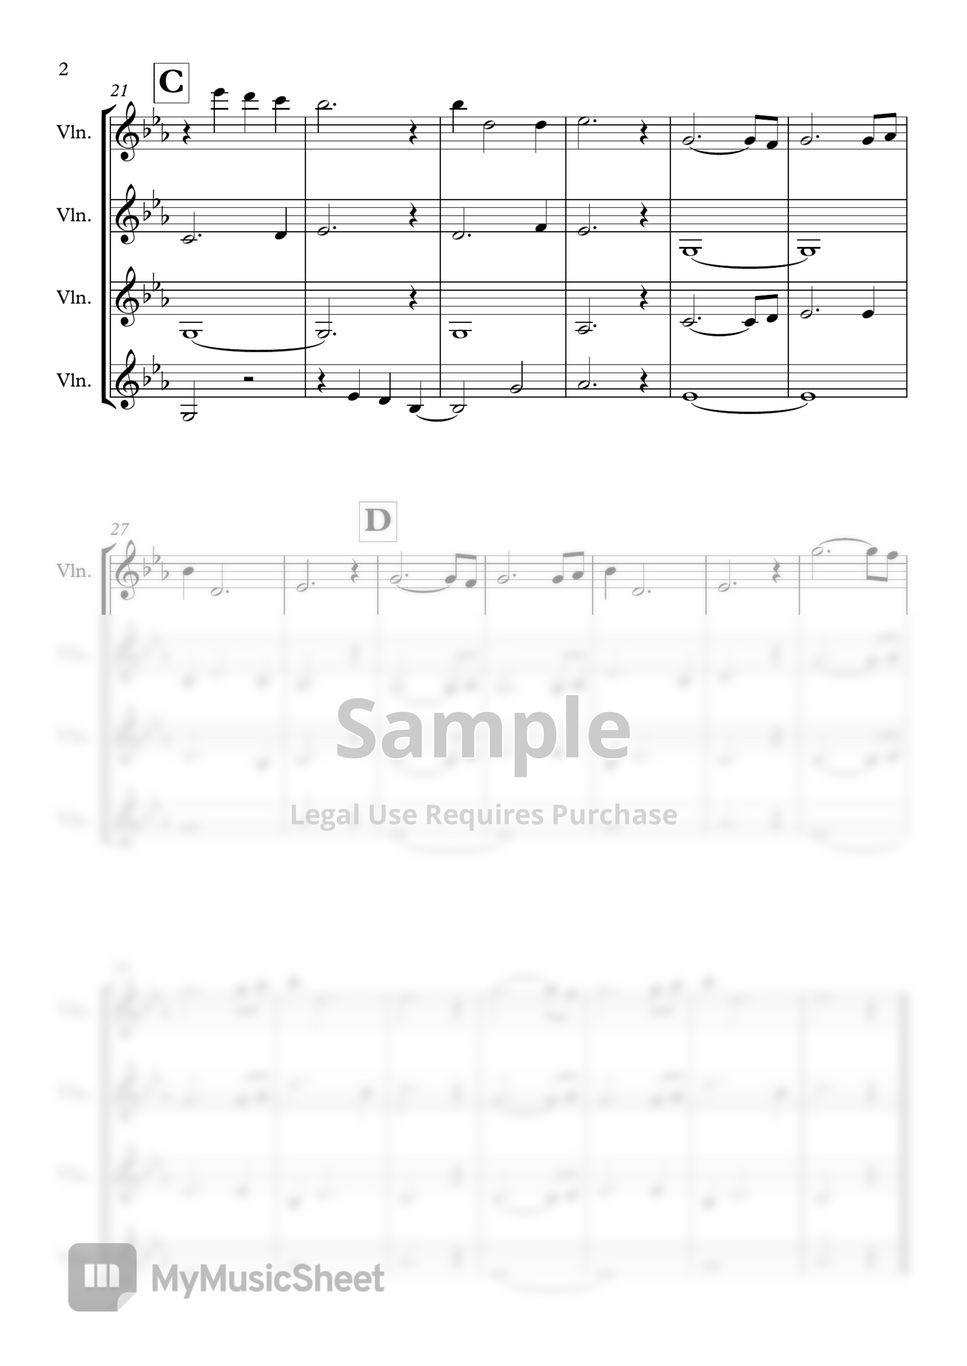 개미(GAEMI) - 4 Strings of Sweet Home (스위트홈 OST 4Violin) by Violin HAN